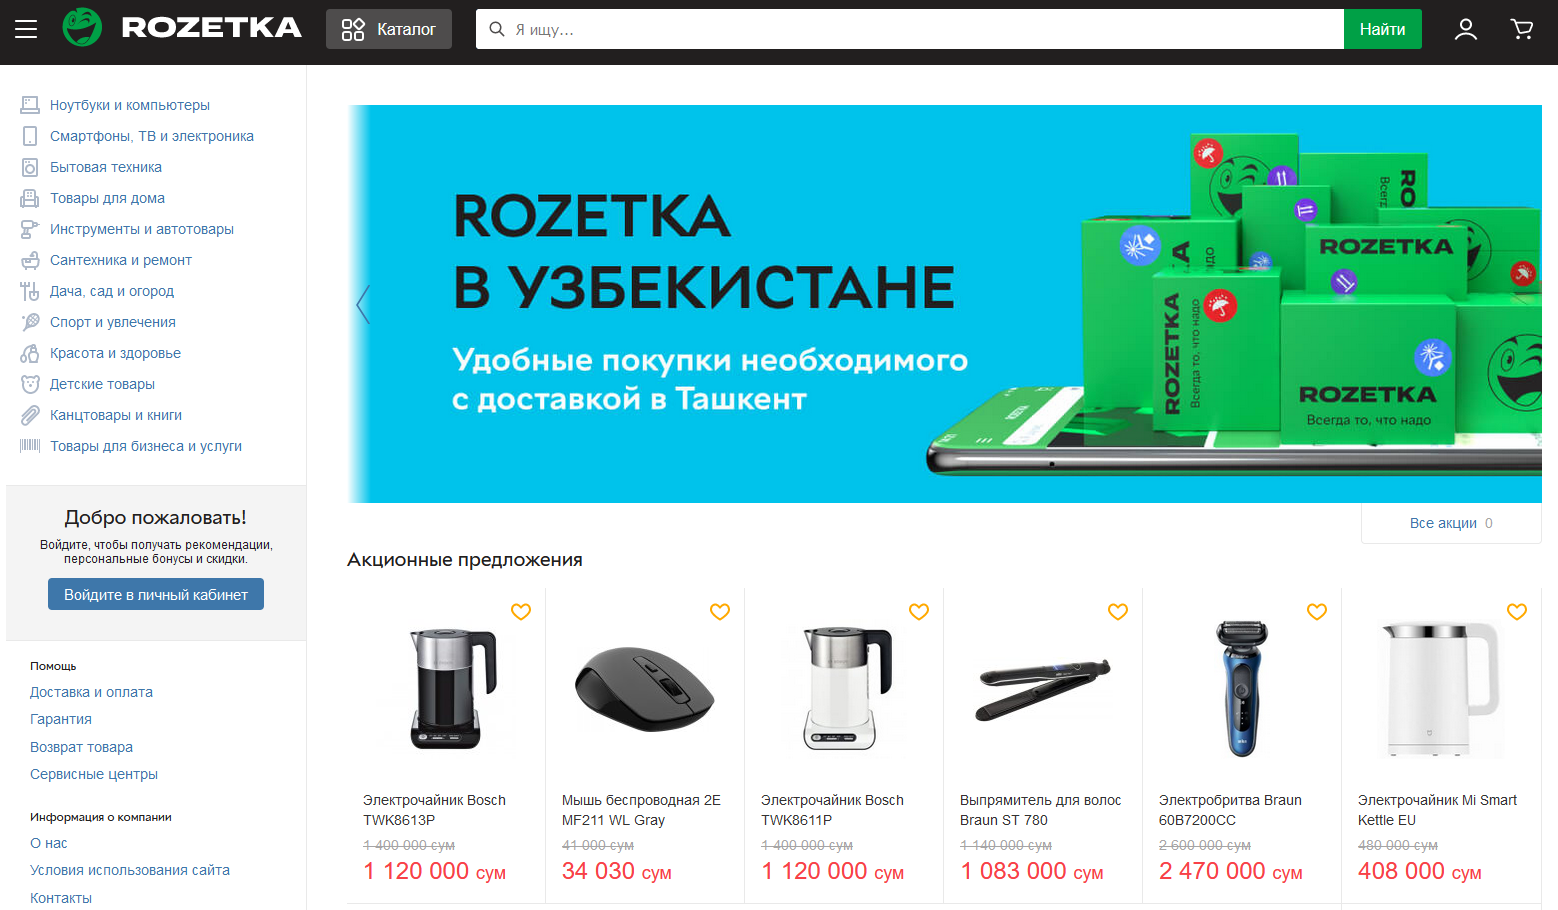 Rozetka собирается запустить в Узбекистане маркетплейс и кроссборд - узбекские товары будут доступны украинцам и наоборот